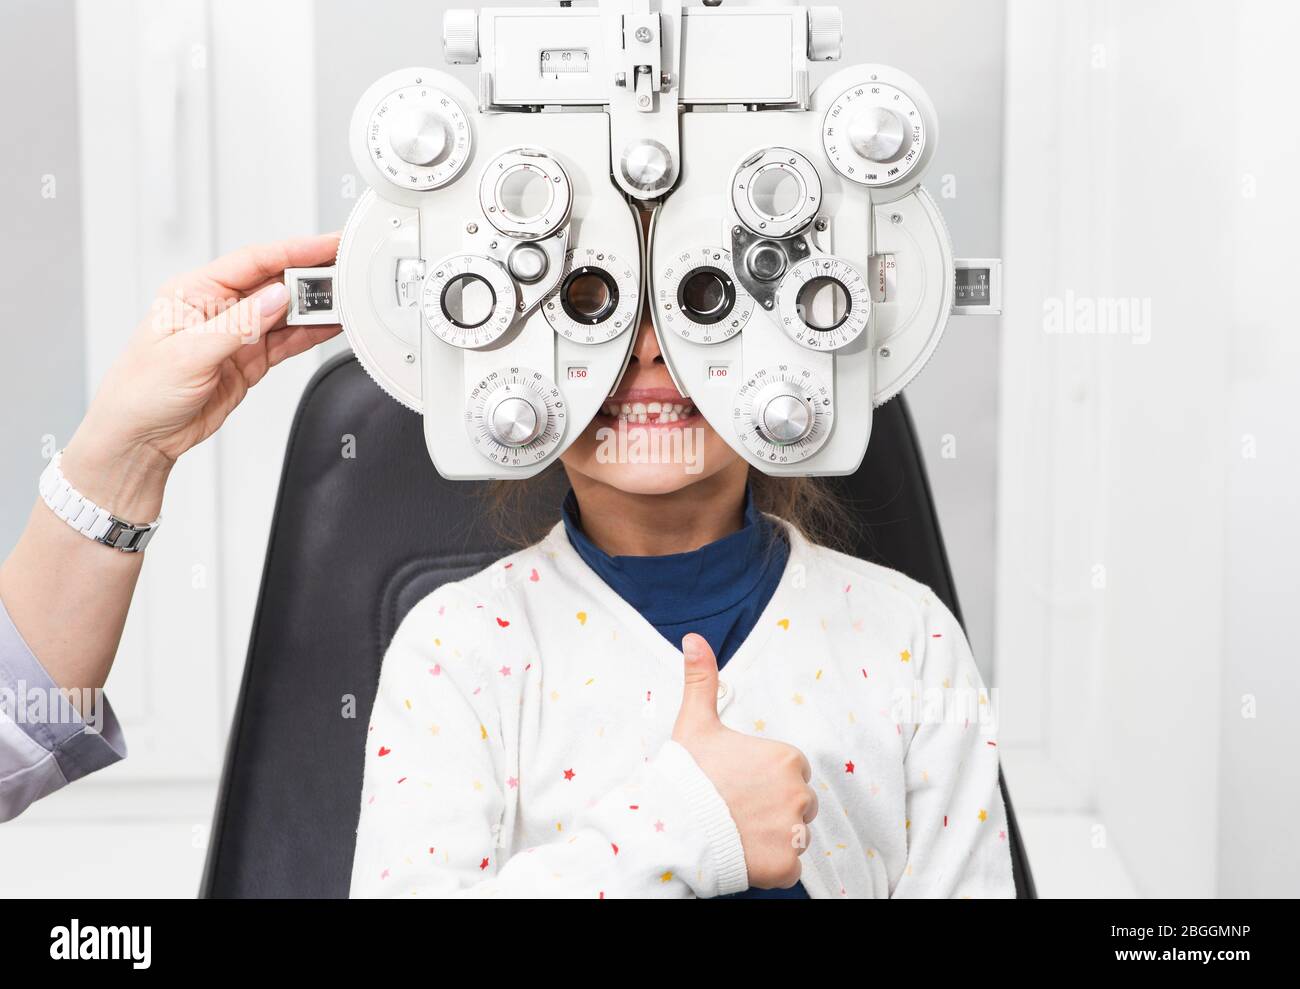 Mädchen zeigt Daumen nach oben bei einem Augenarzt Termin. Foropter - ein  Gerät zur Messung von Brechungsfehlern und zur Bestimmung von Informationen  für eine Präs Stockfotografie - Alamy